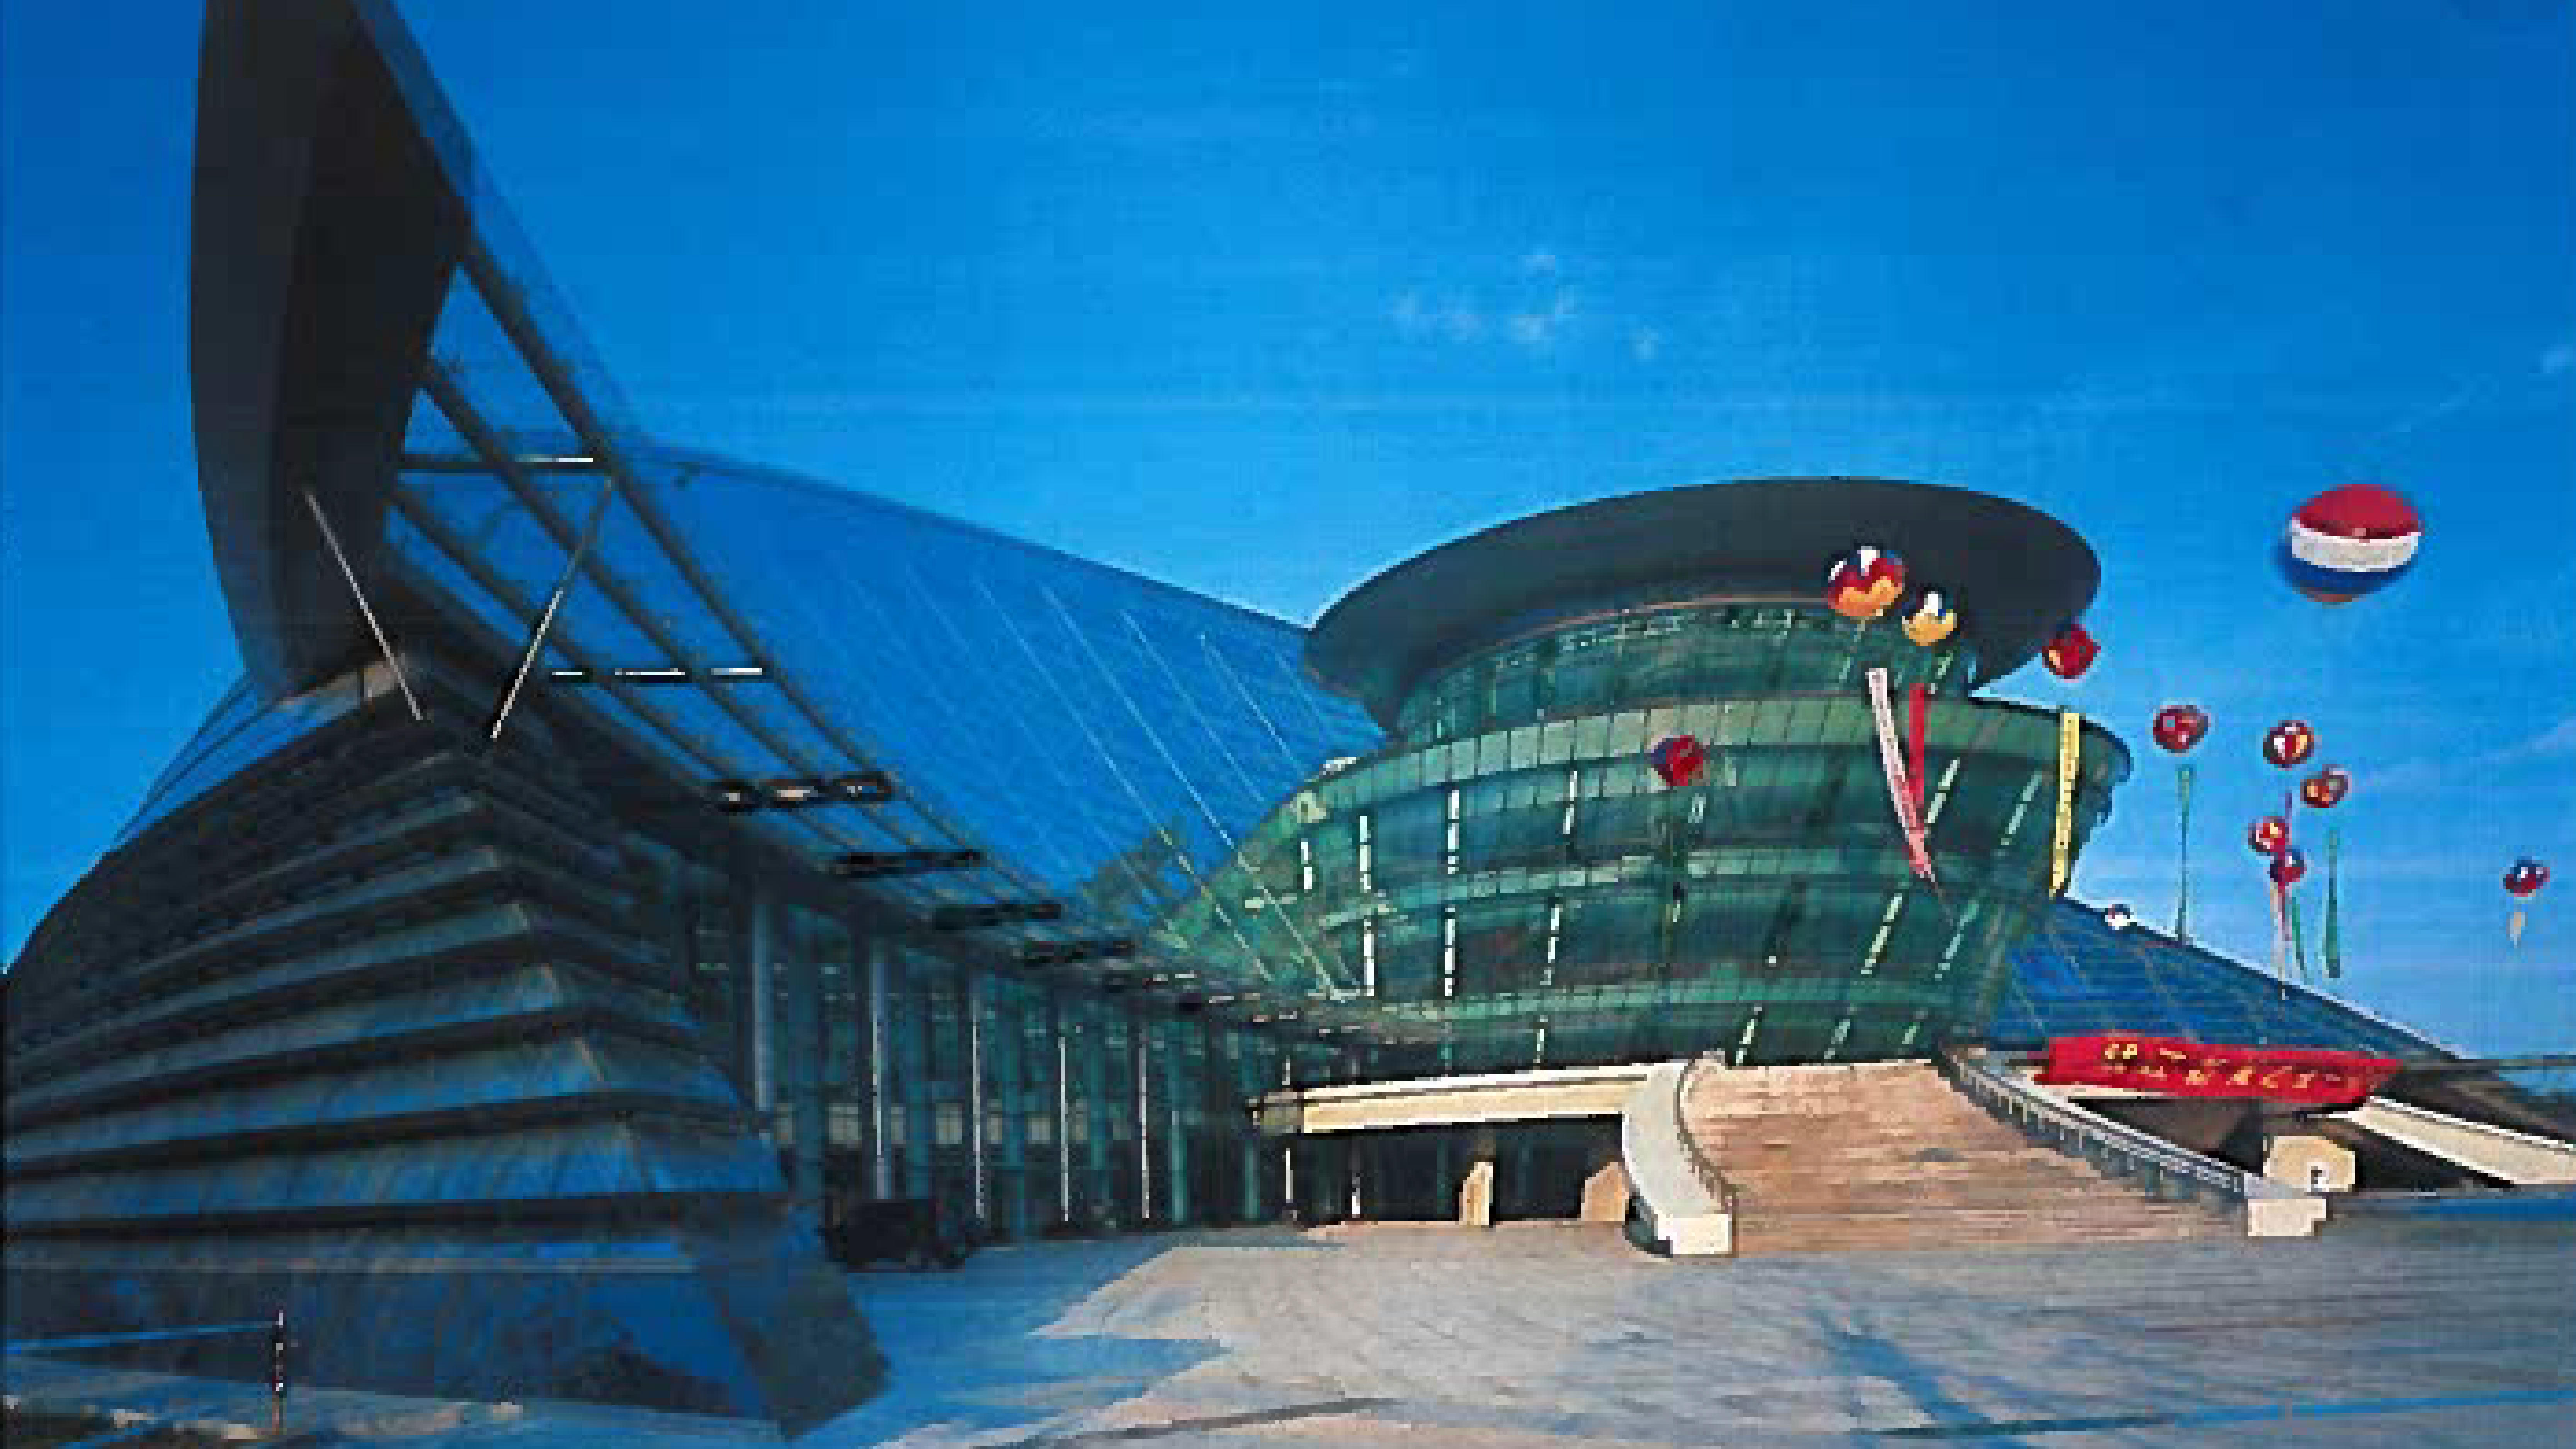 Hangzhou Grand Theatre Exterior